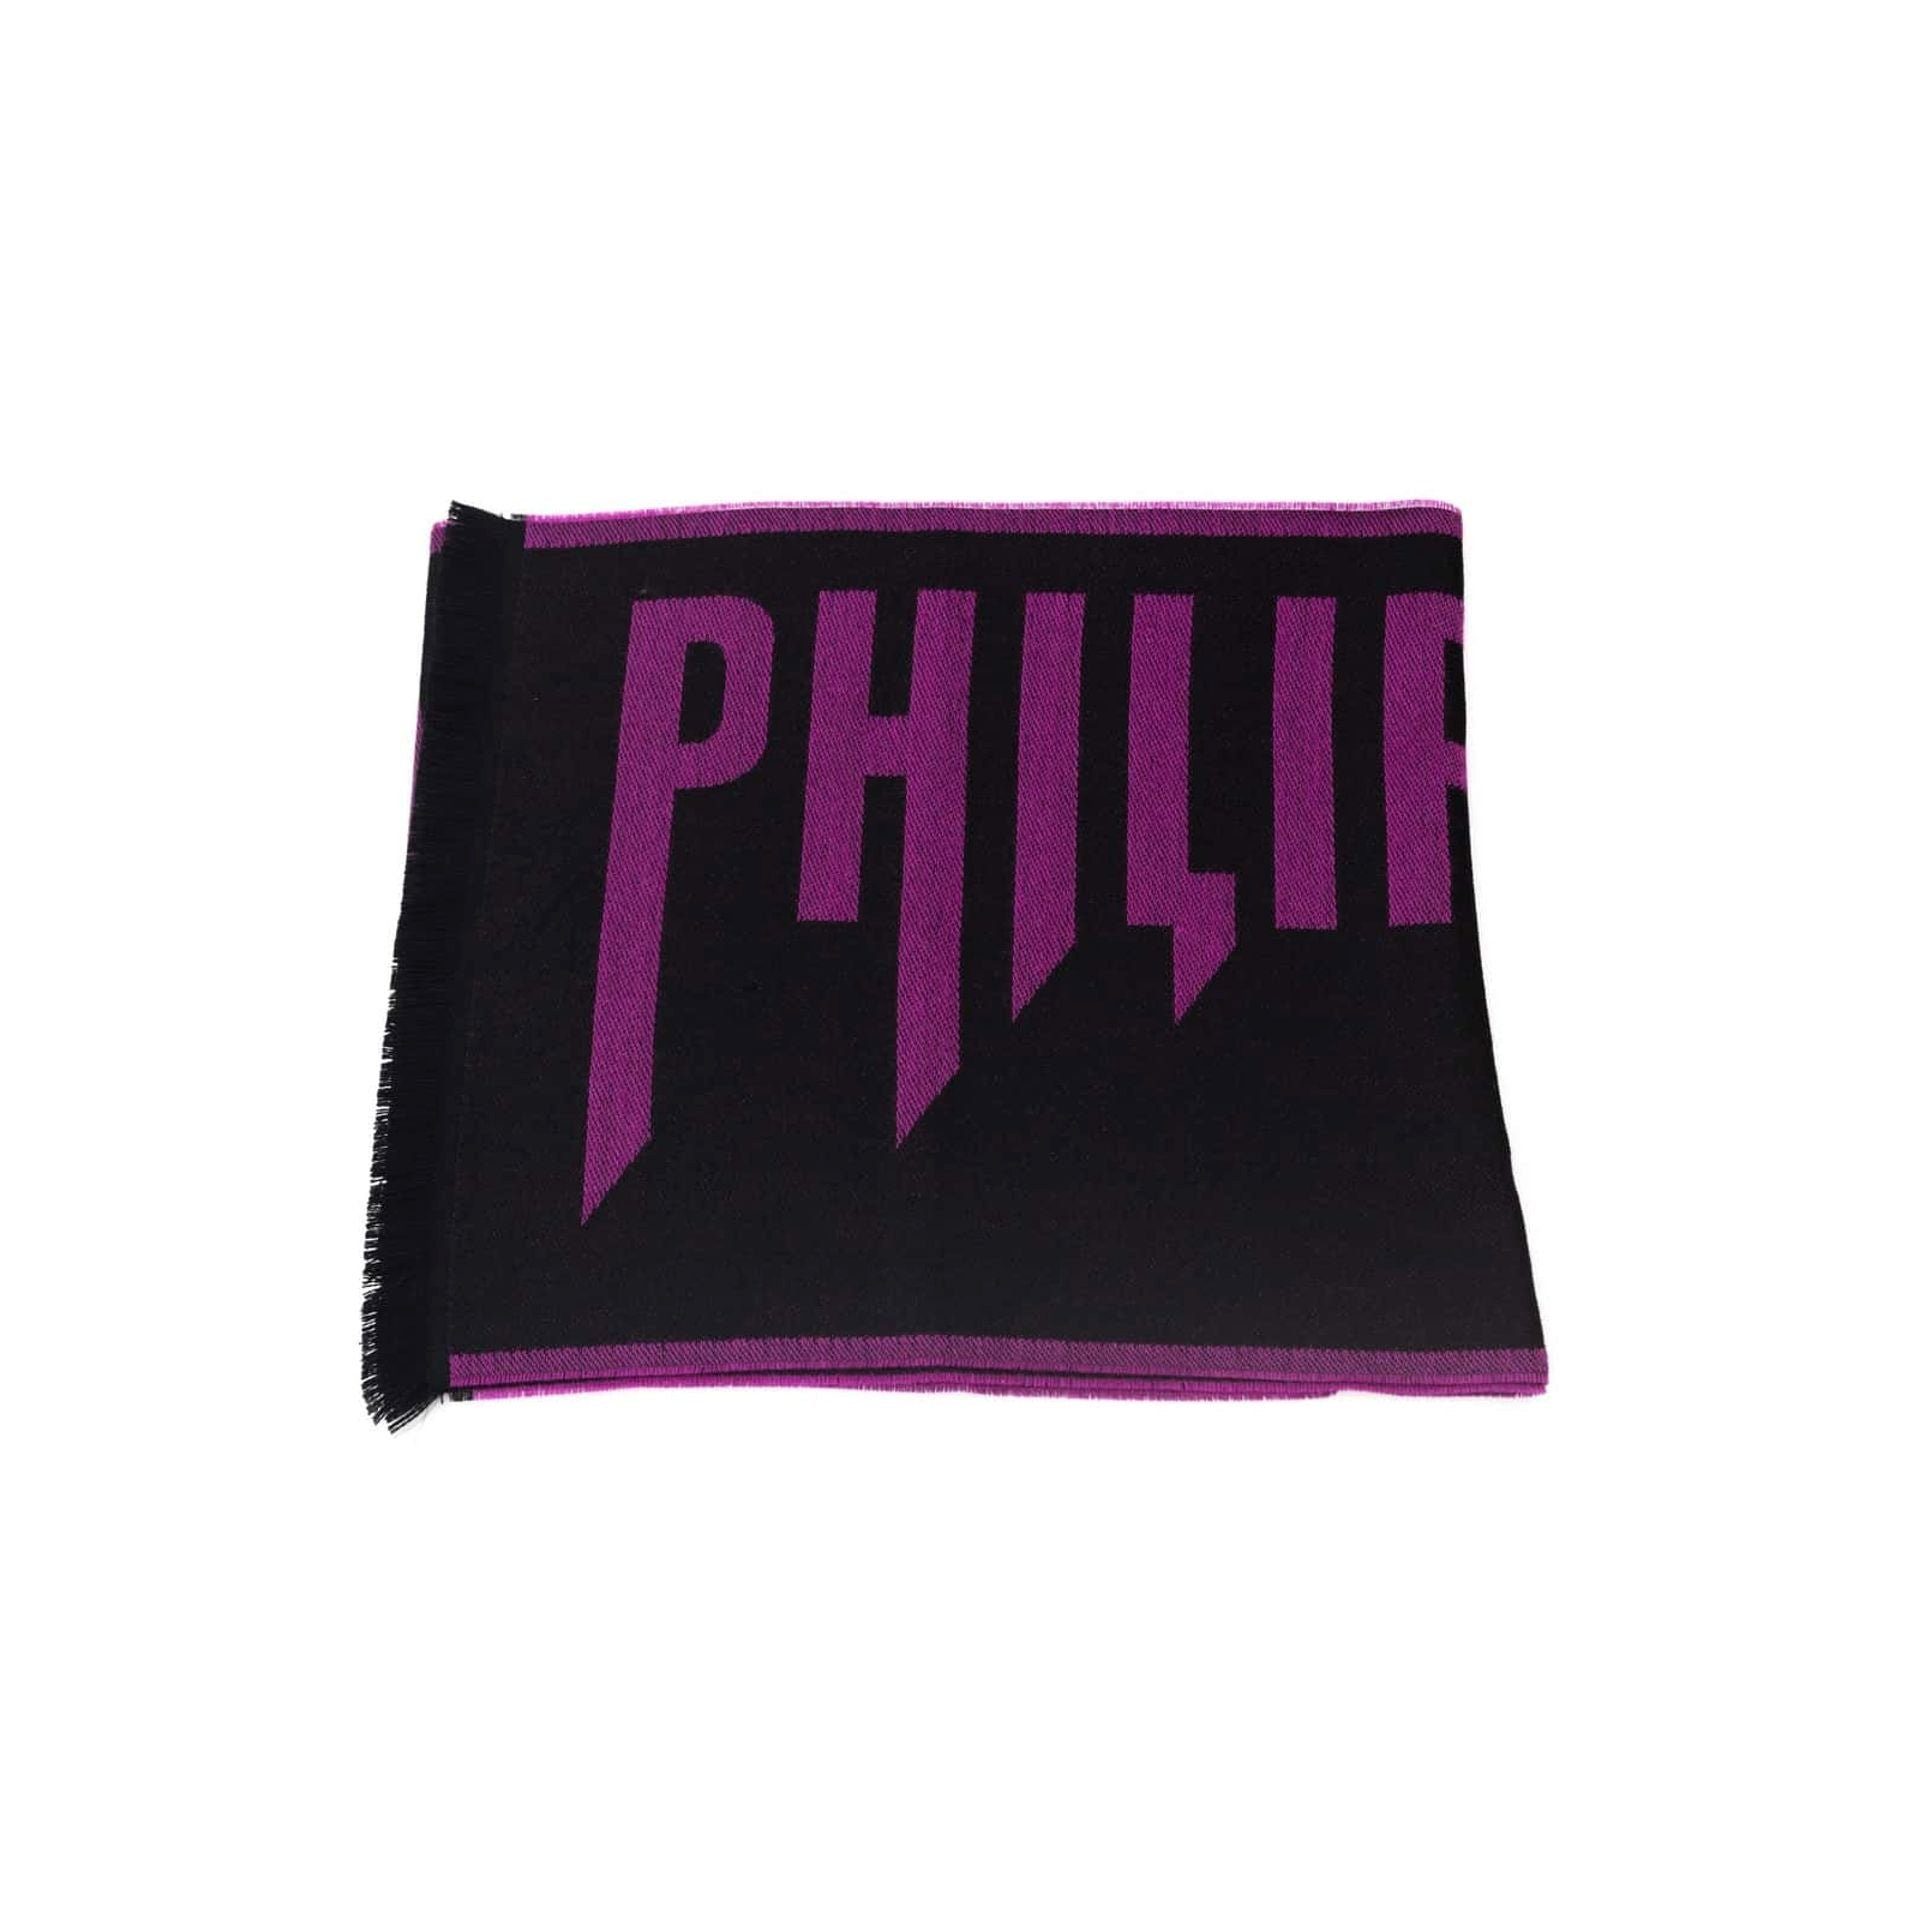 PHILIPP PLEIN Schal Philipp Plein, Herren Schal, Schwarz-Purple, Exklusive Designs für den modernen Mann